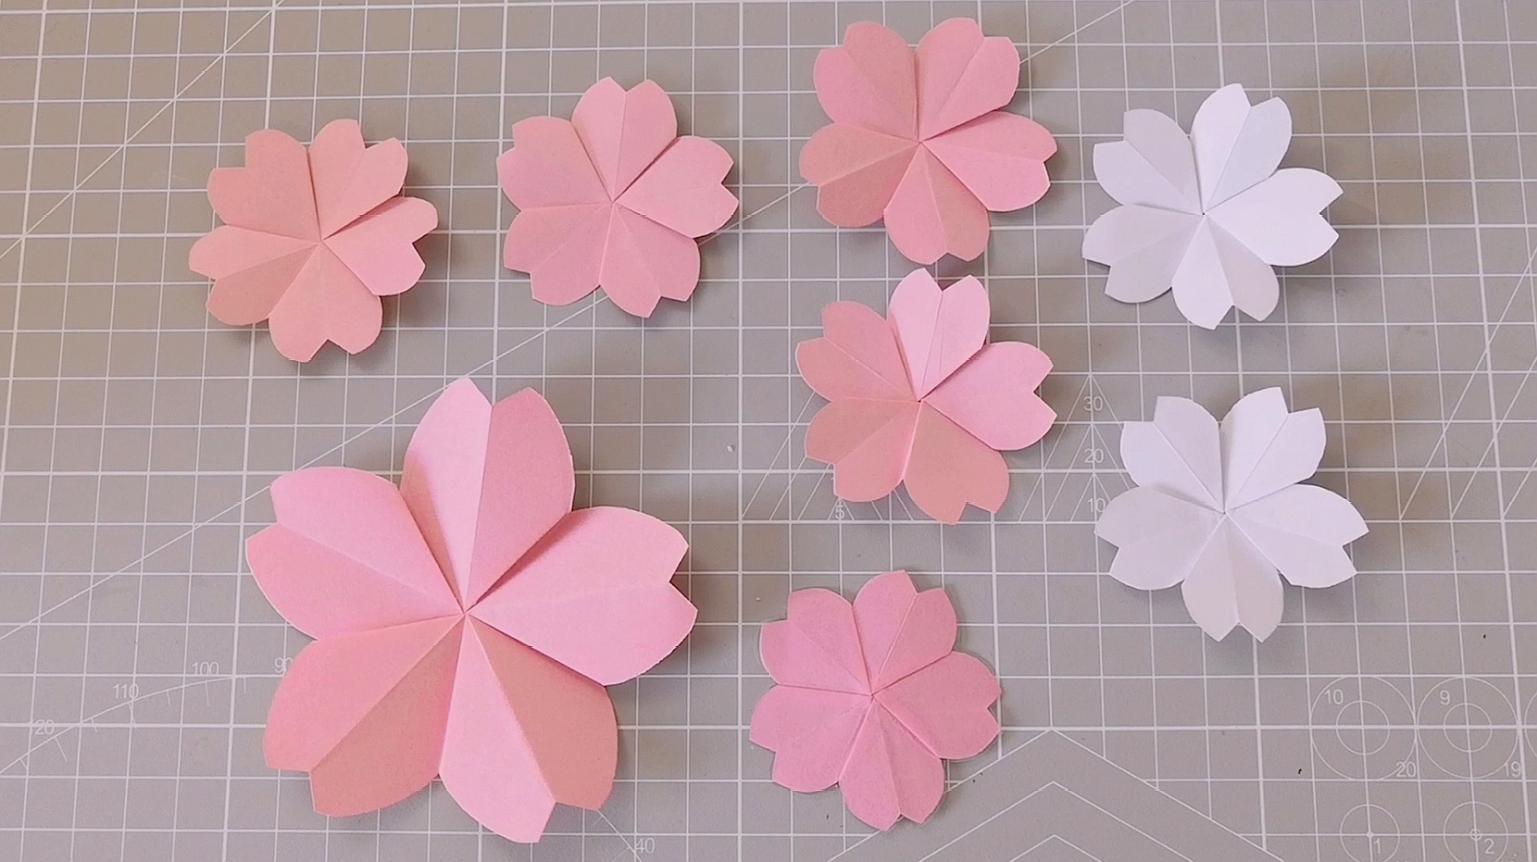 漂亮又简单的平面樱花,剪一剪折一折就能完成,方法很简单呢